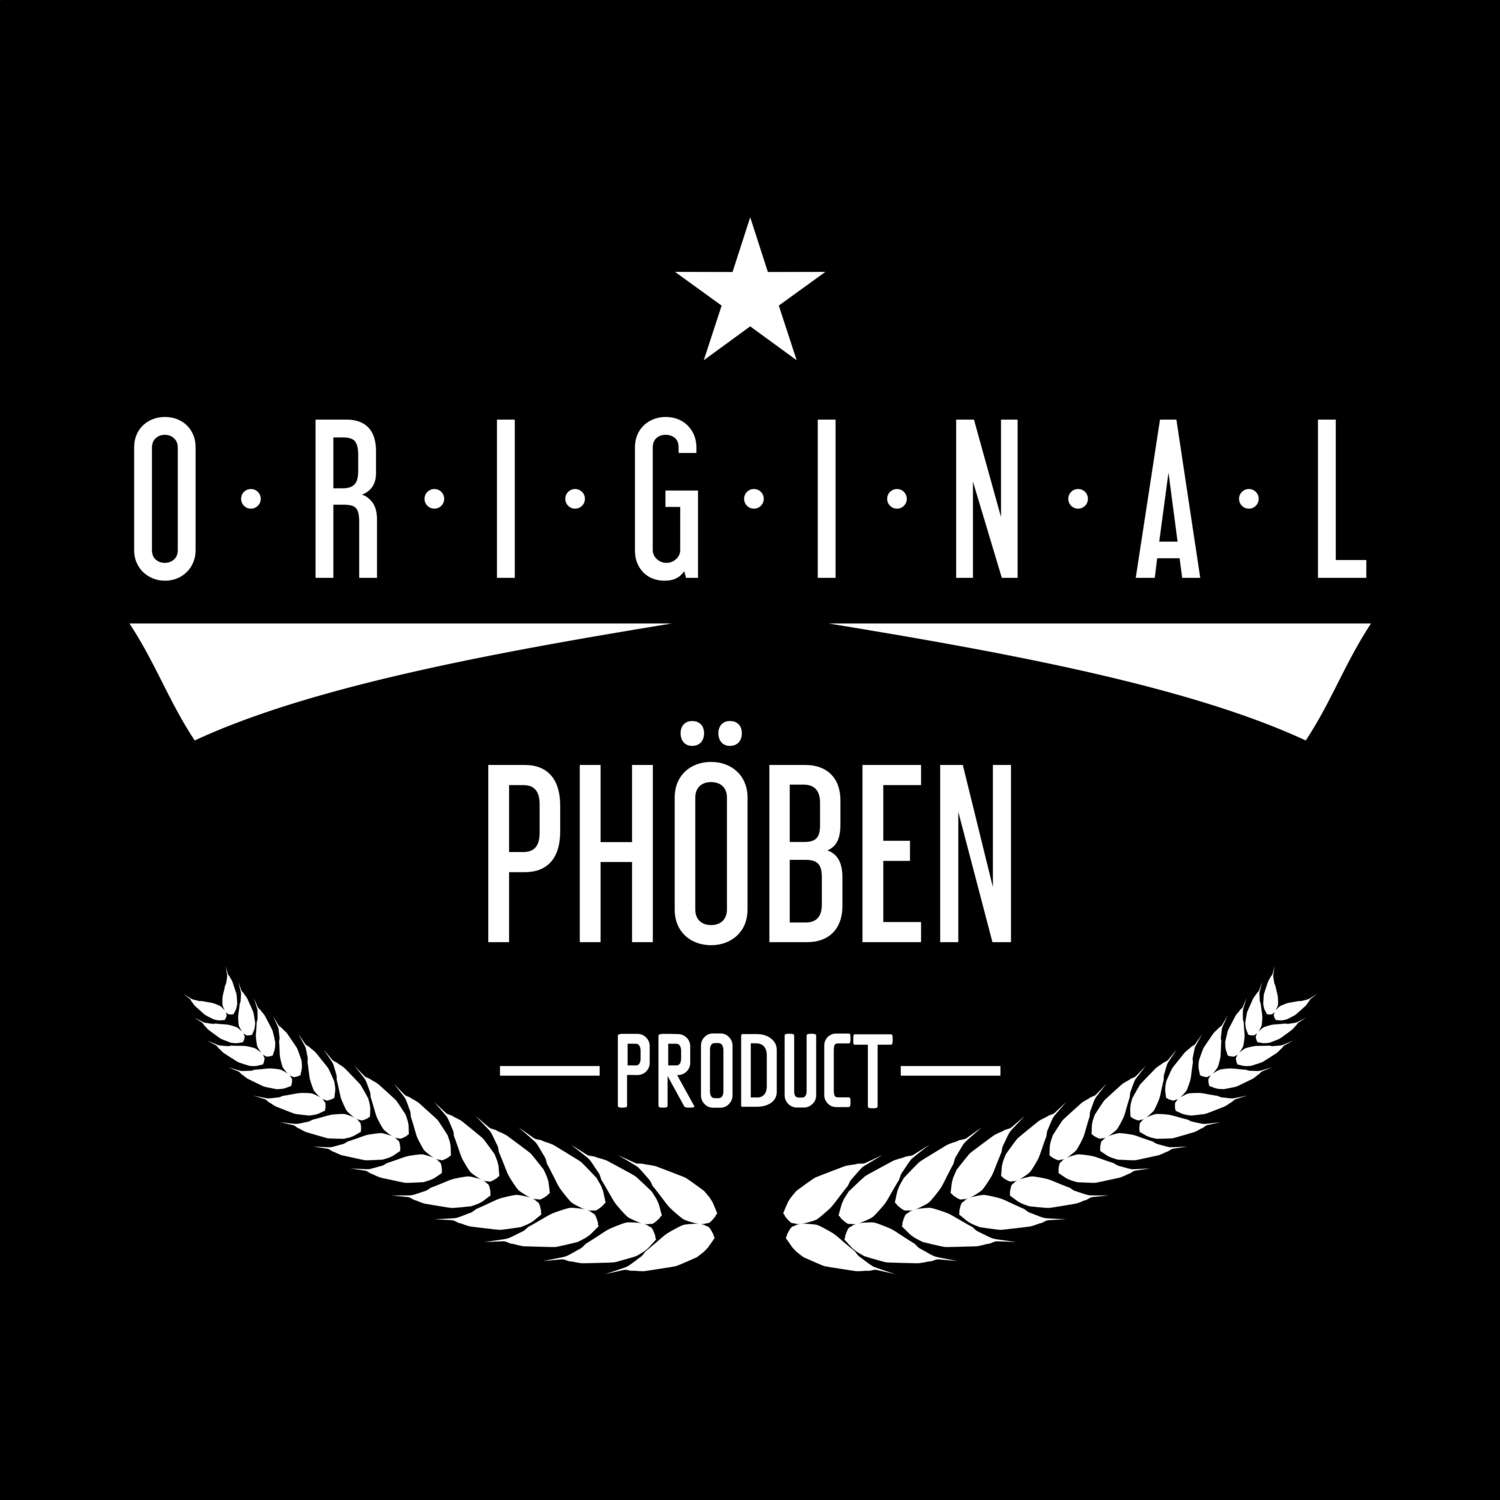 Phöben T-Shirt »Original Product«